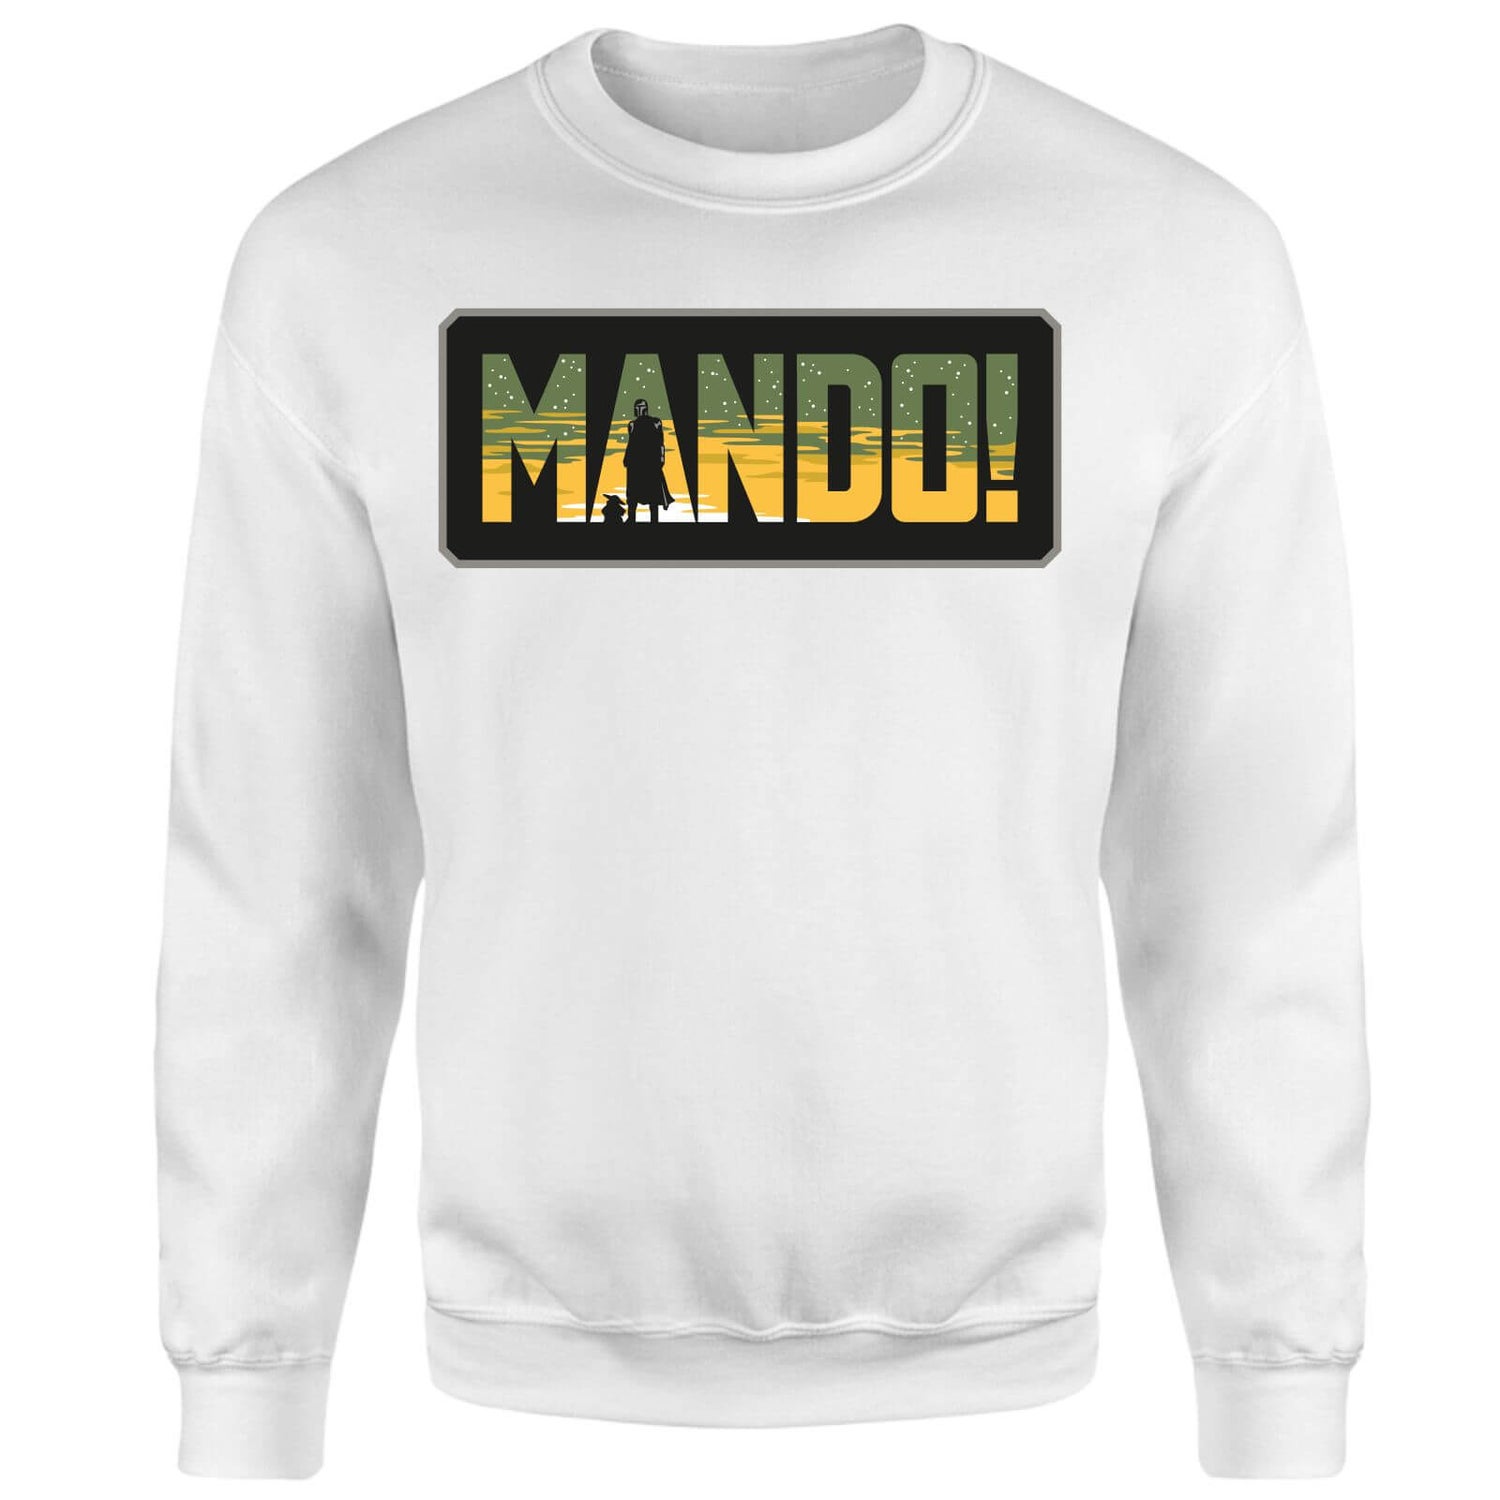 Star Wars The Mandalorian Mando! Sweatshirt - White